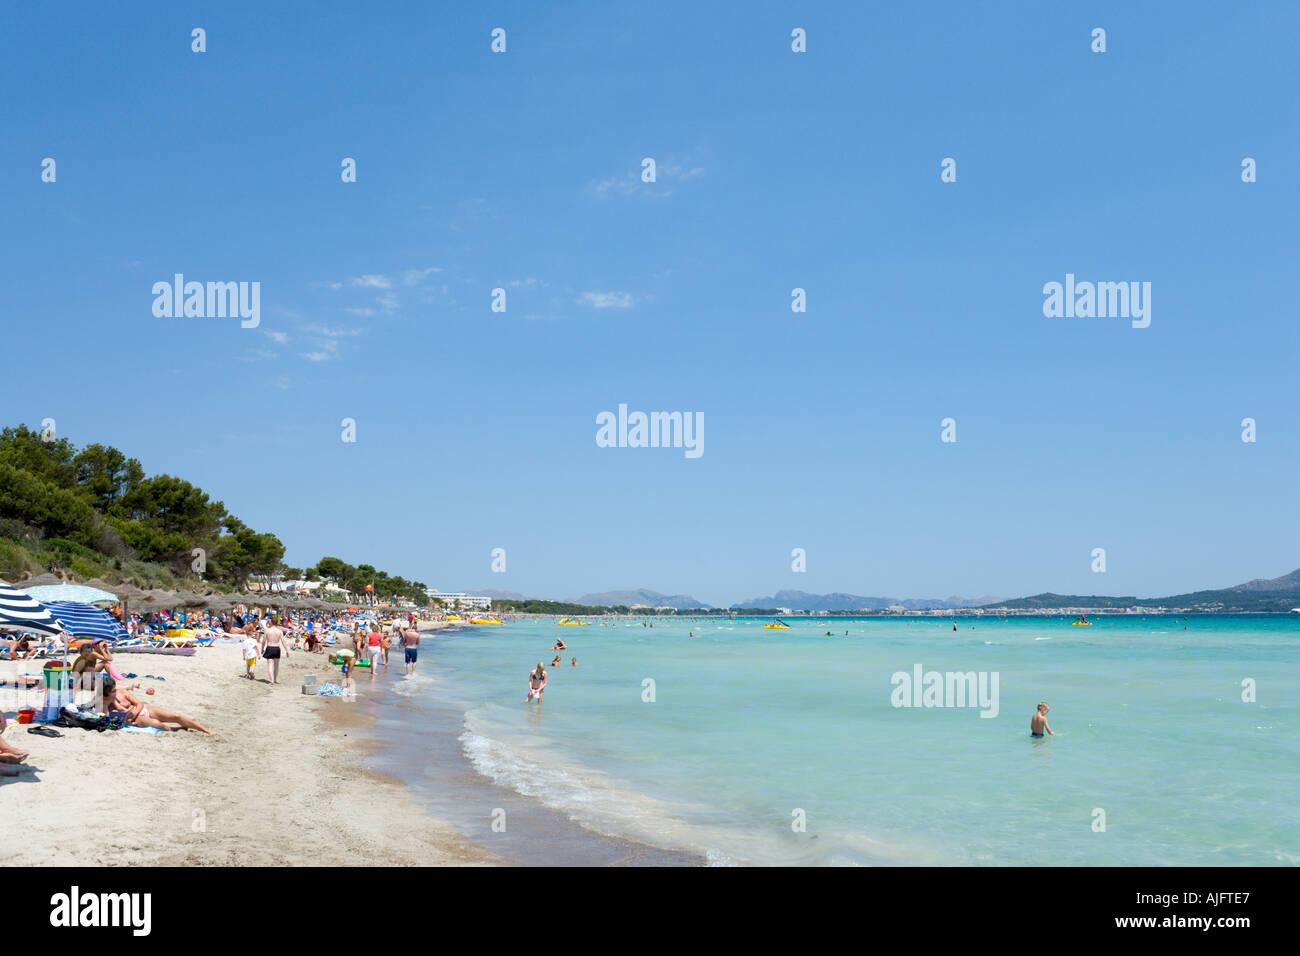 Spiaggia, Platja de muro, Alcudia, Mallorca, Spagna Foto Stock